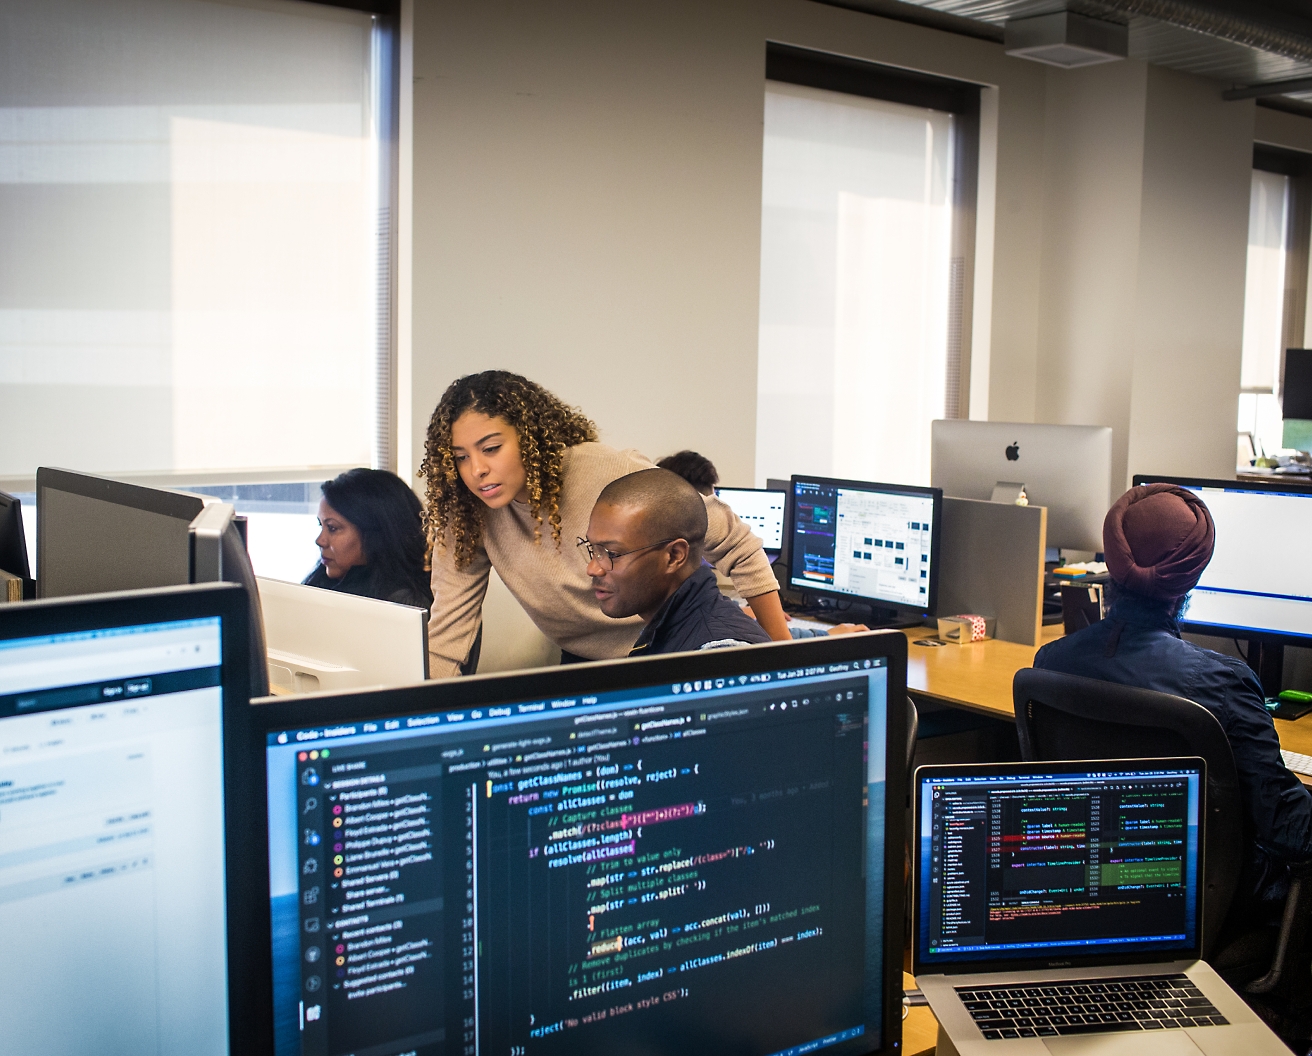 さまざまなコードやデータが表示された画面を中心に、オフィス環境でコンピューターで作業するさまざまなプロフェッショナルたち。